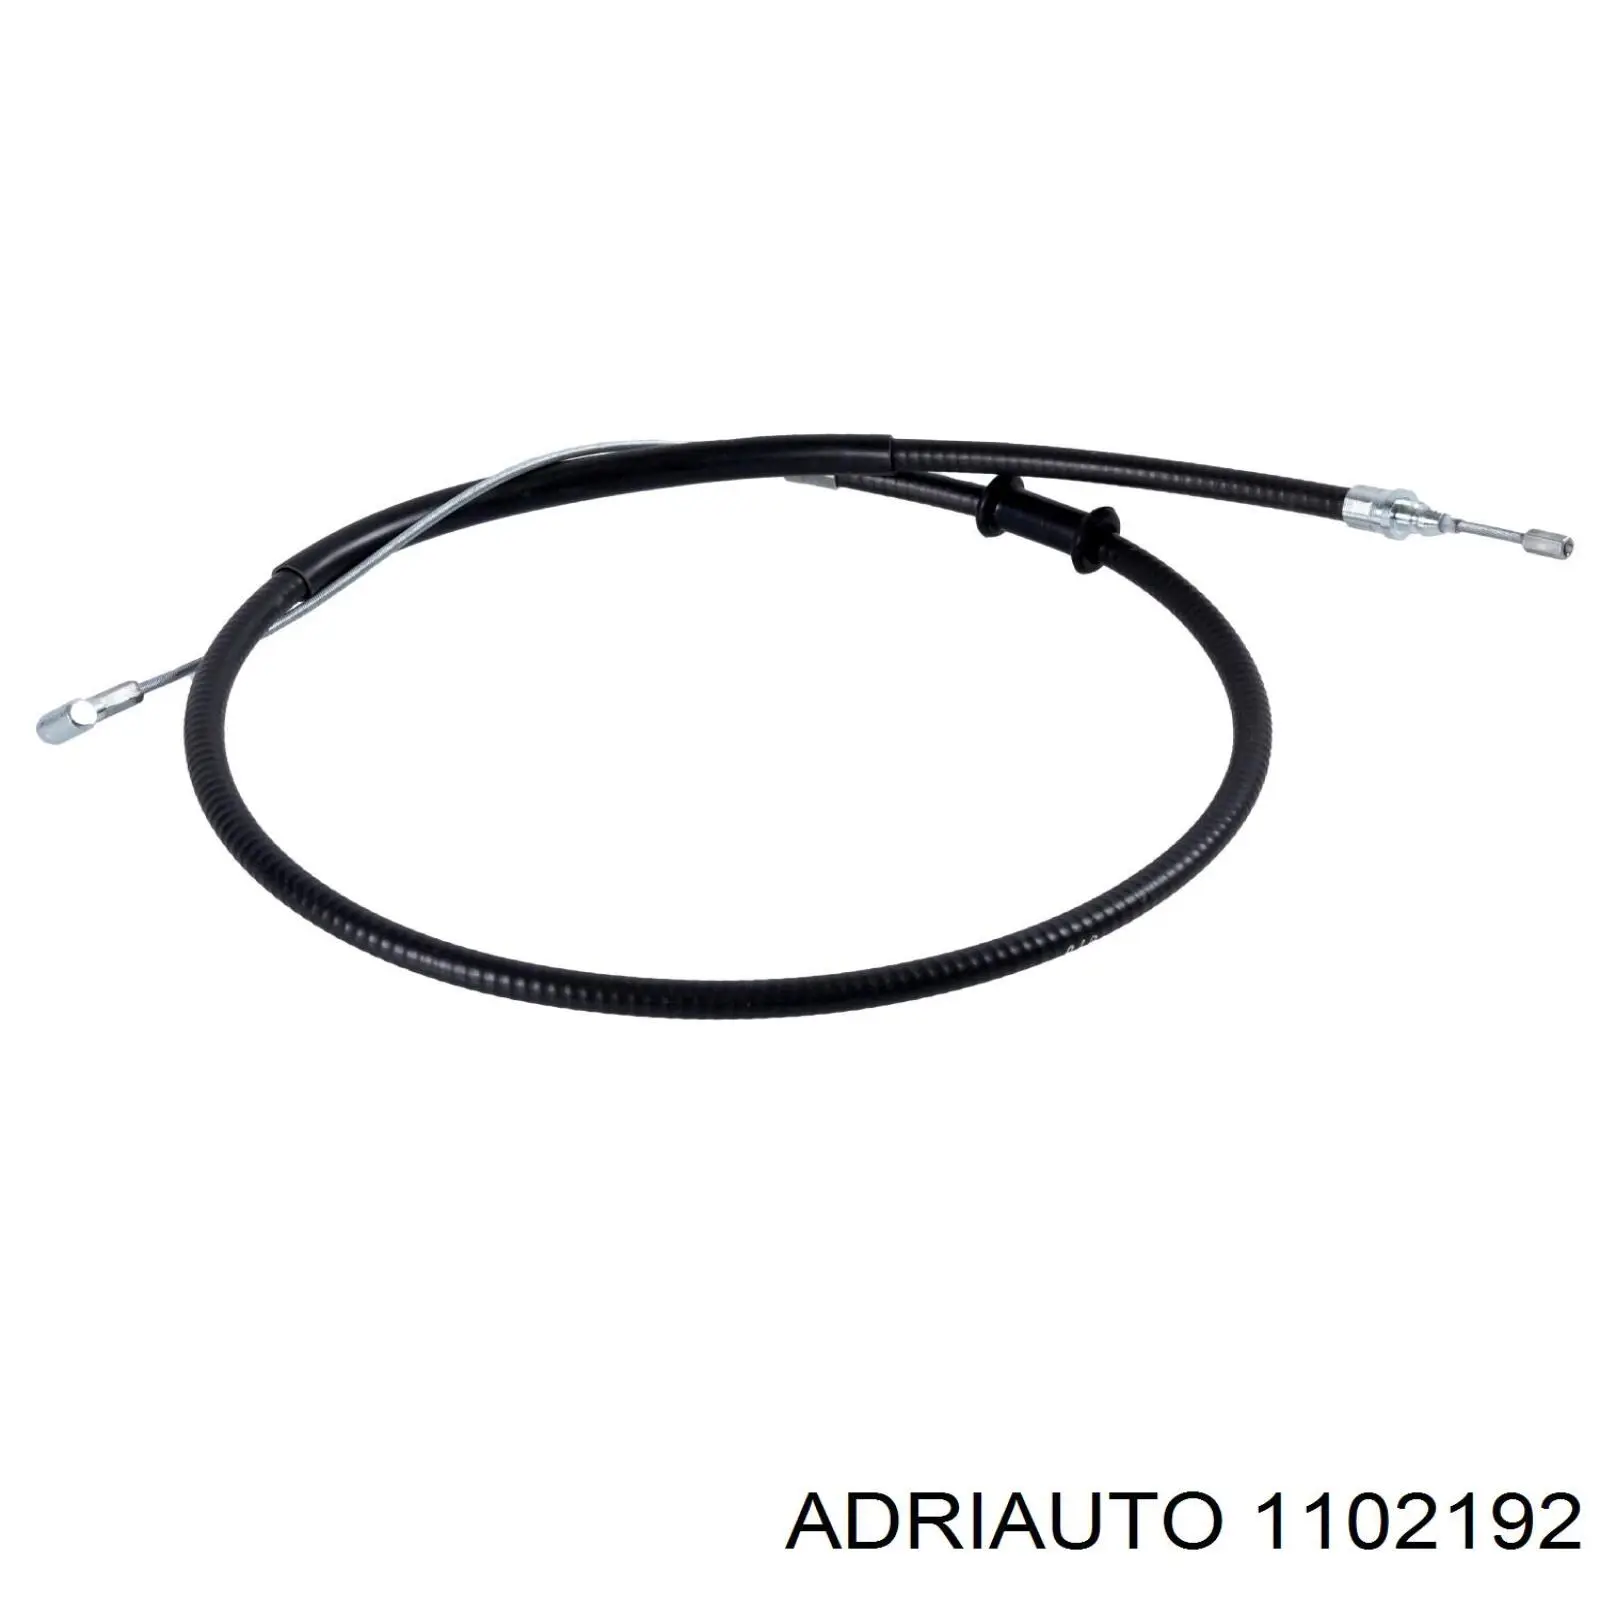 1102192 Adriauto cable de freno de mano trasero derecho/izquierdo